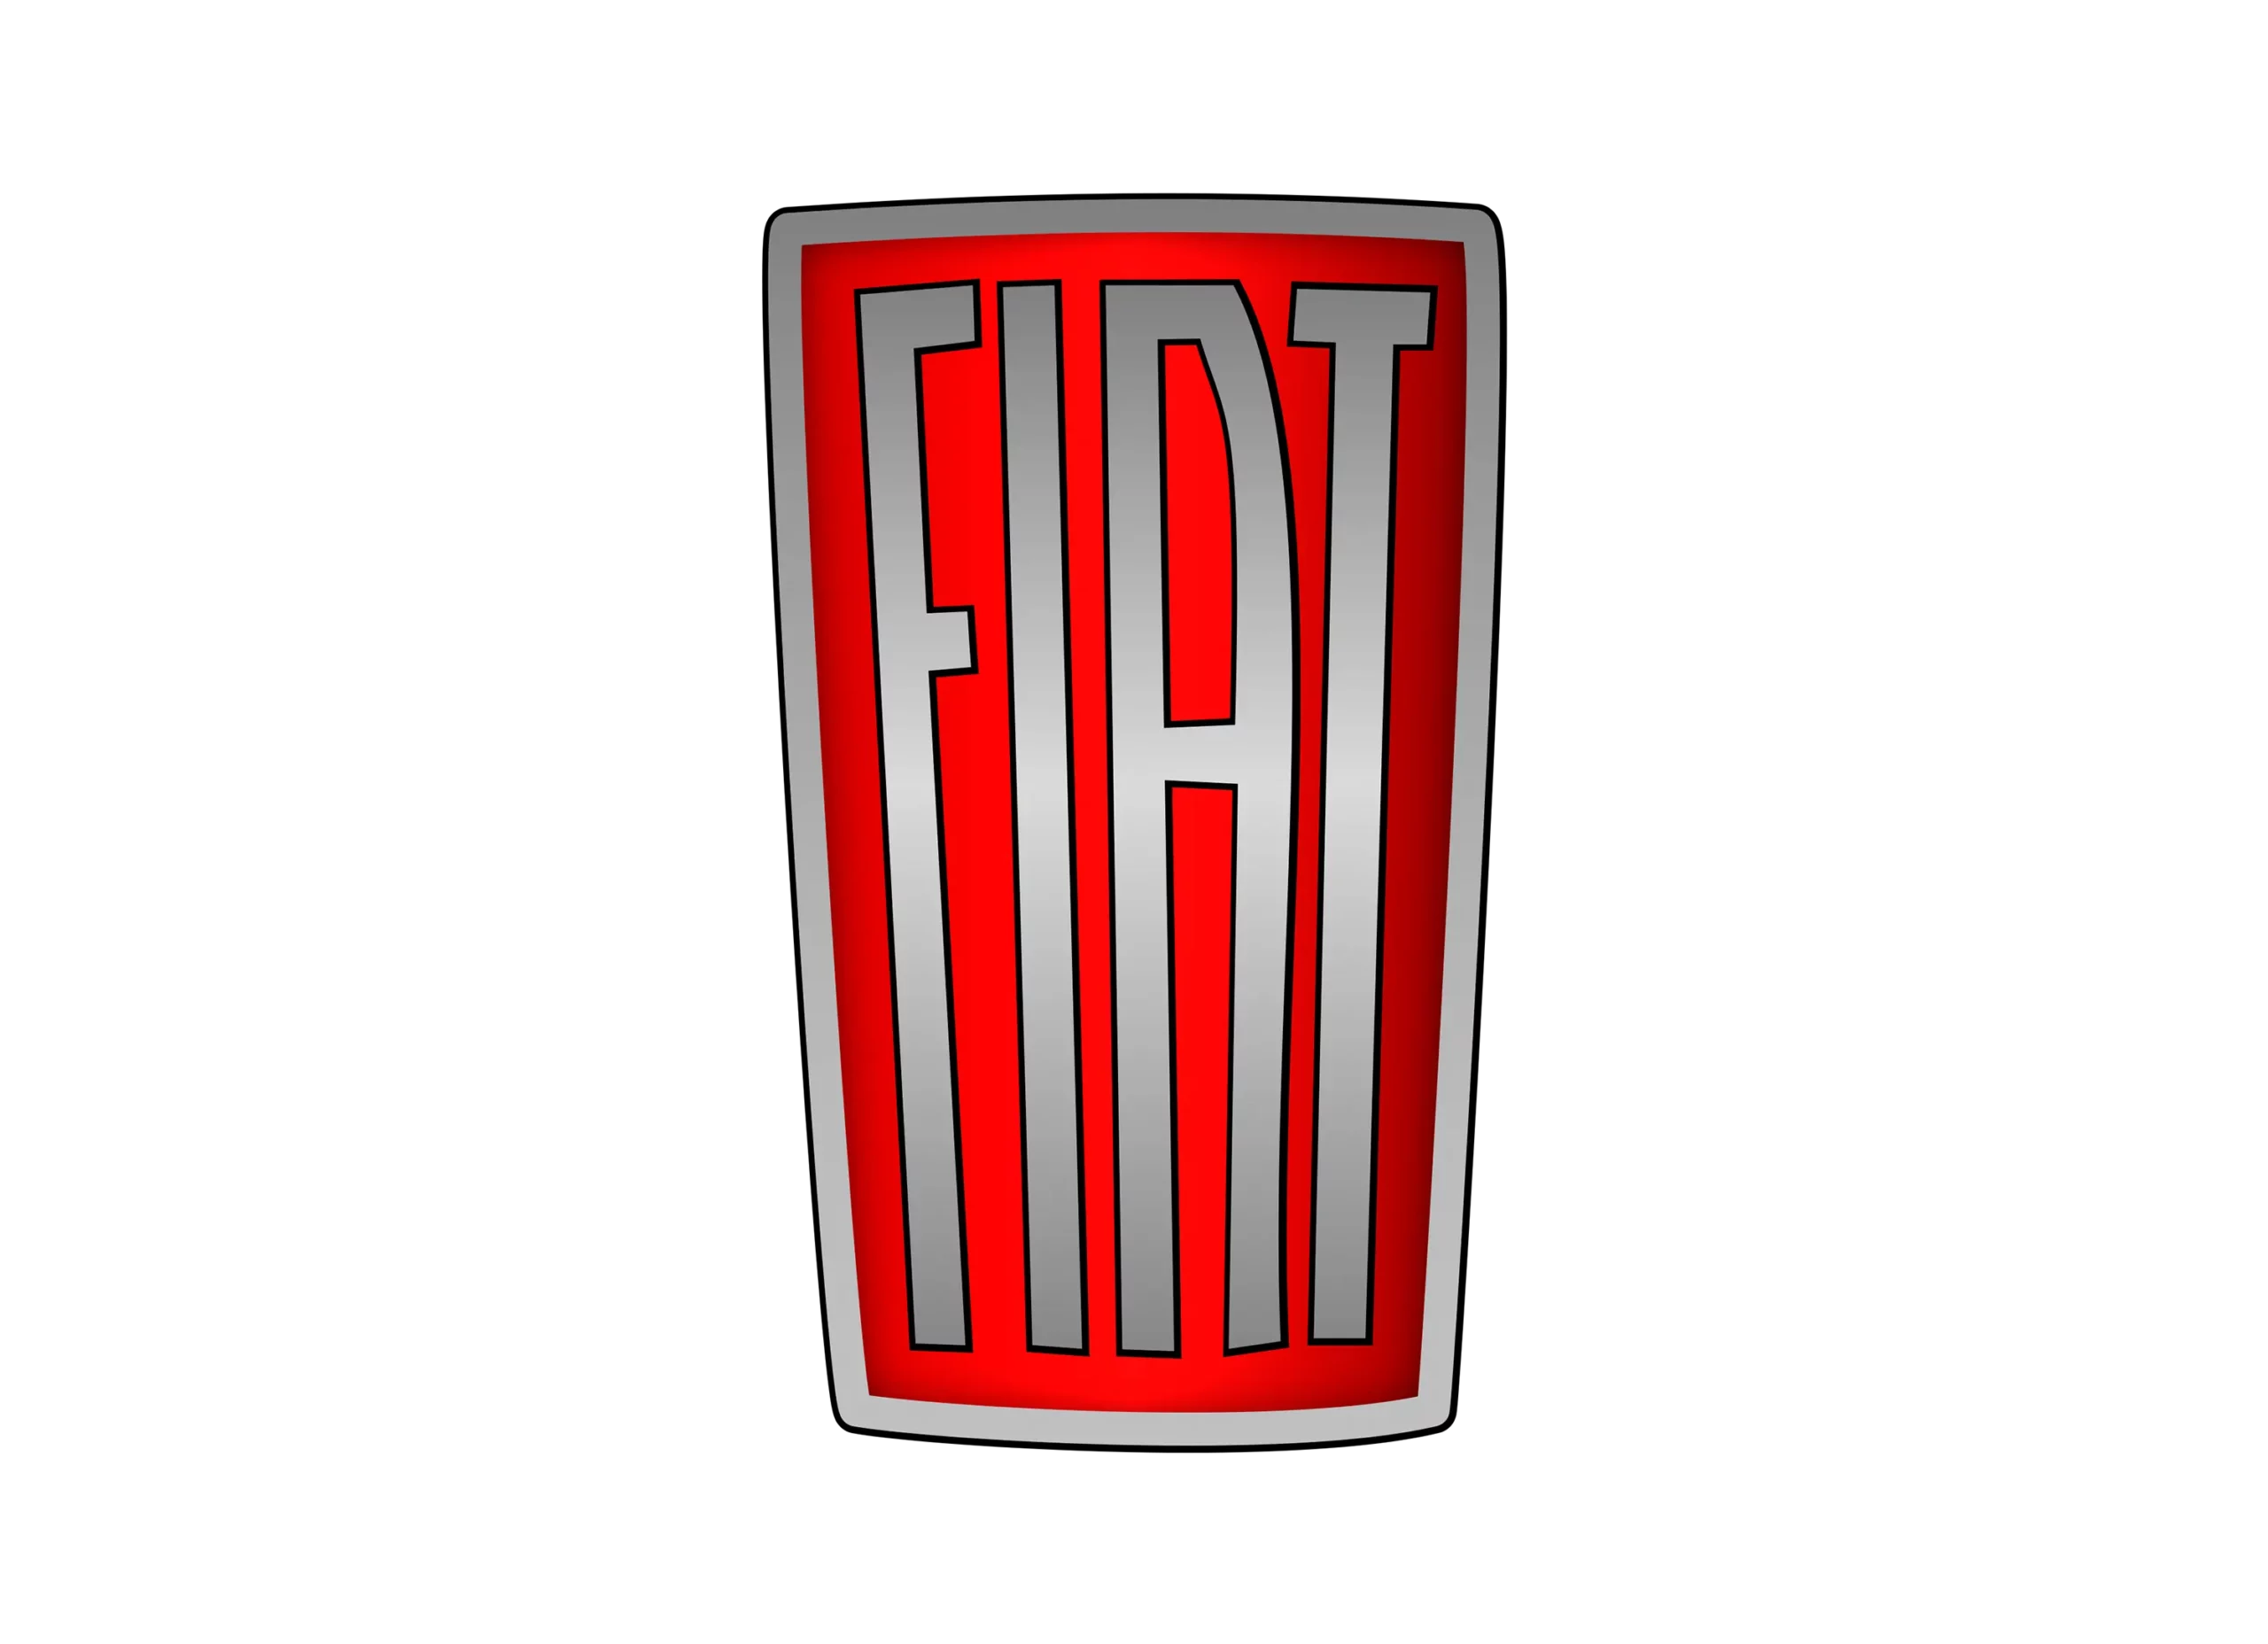 Fiat logo 1949-1959